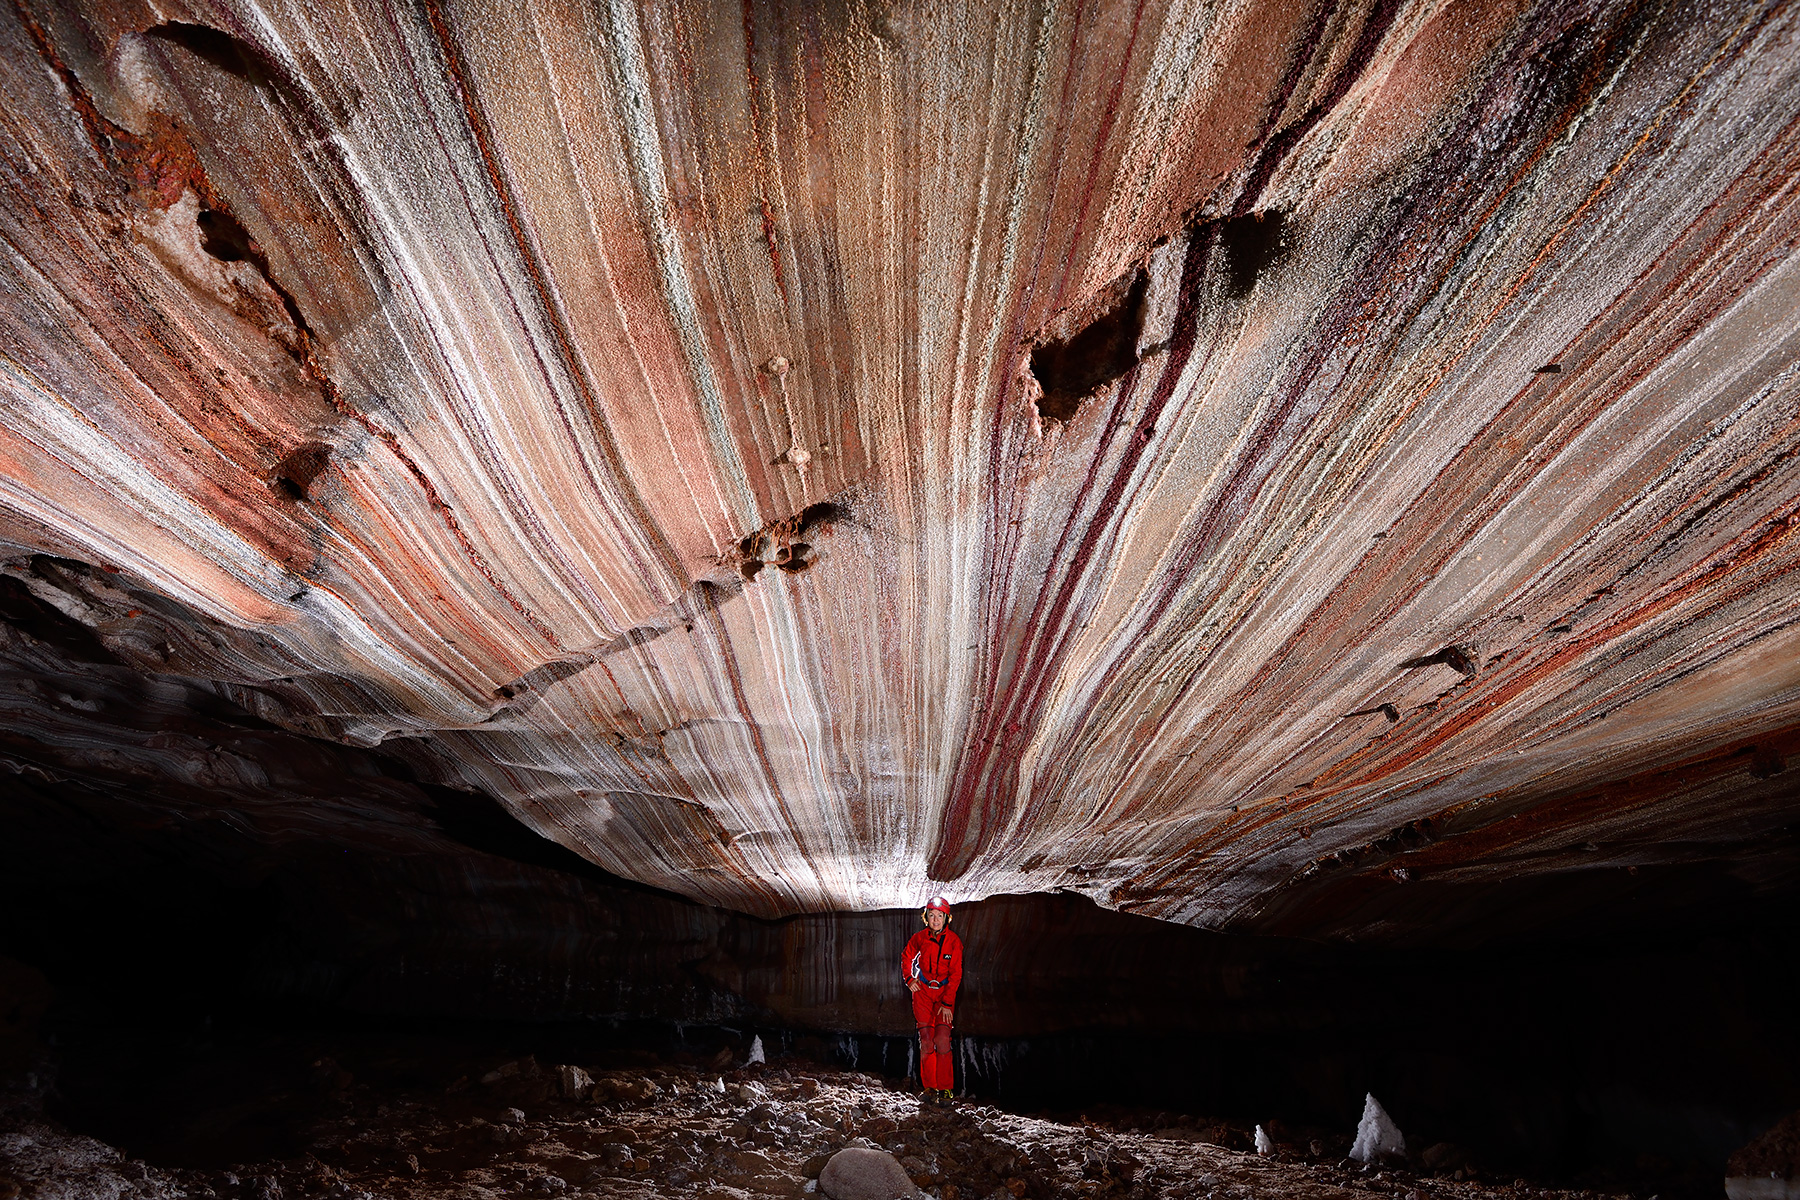 3N Cave (Iran, île de Qeshm, diapir de sel de Namakdan) - Entrée supérieure :  spéléo dans une galerie avec des couches de sel colorées au plafond (blanc, rose, orangé, rouge)